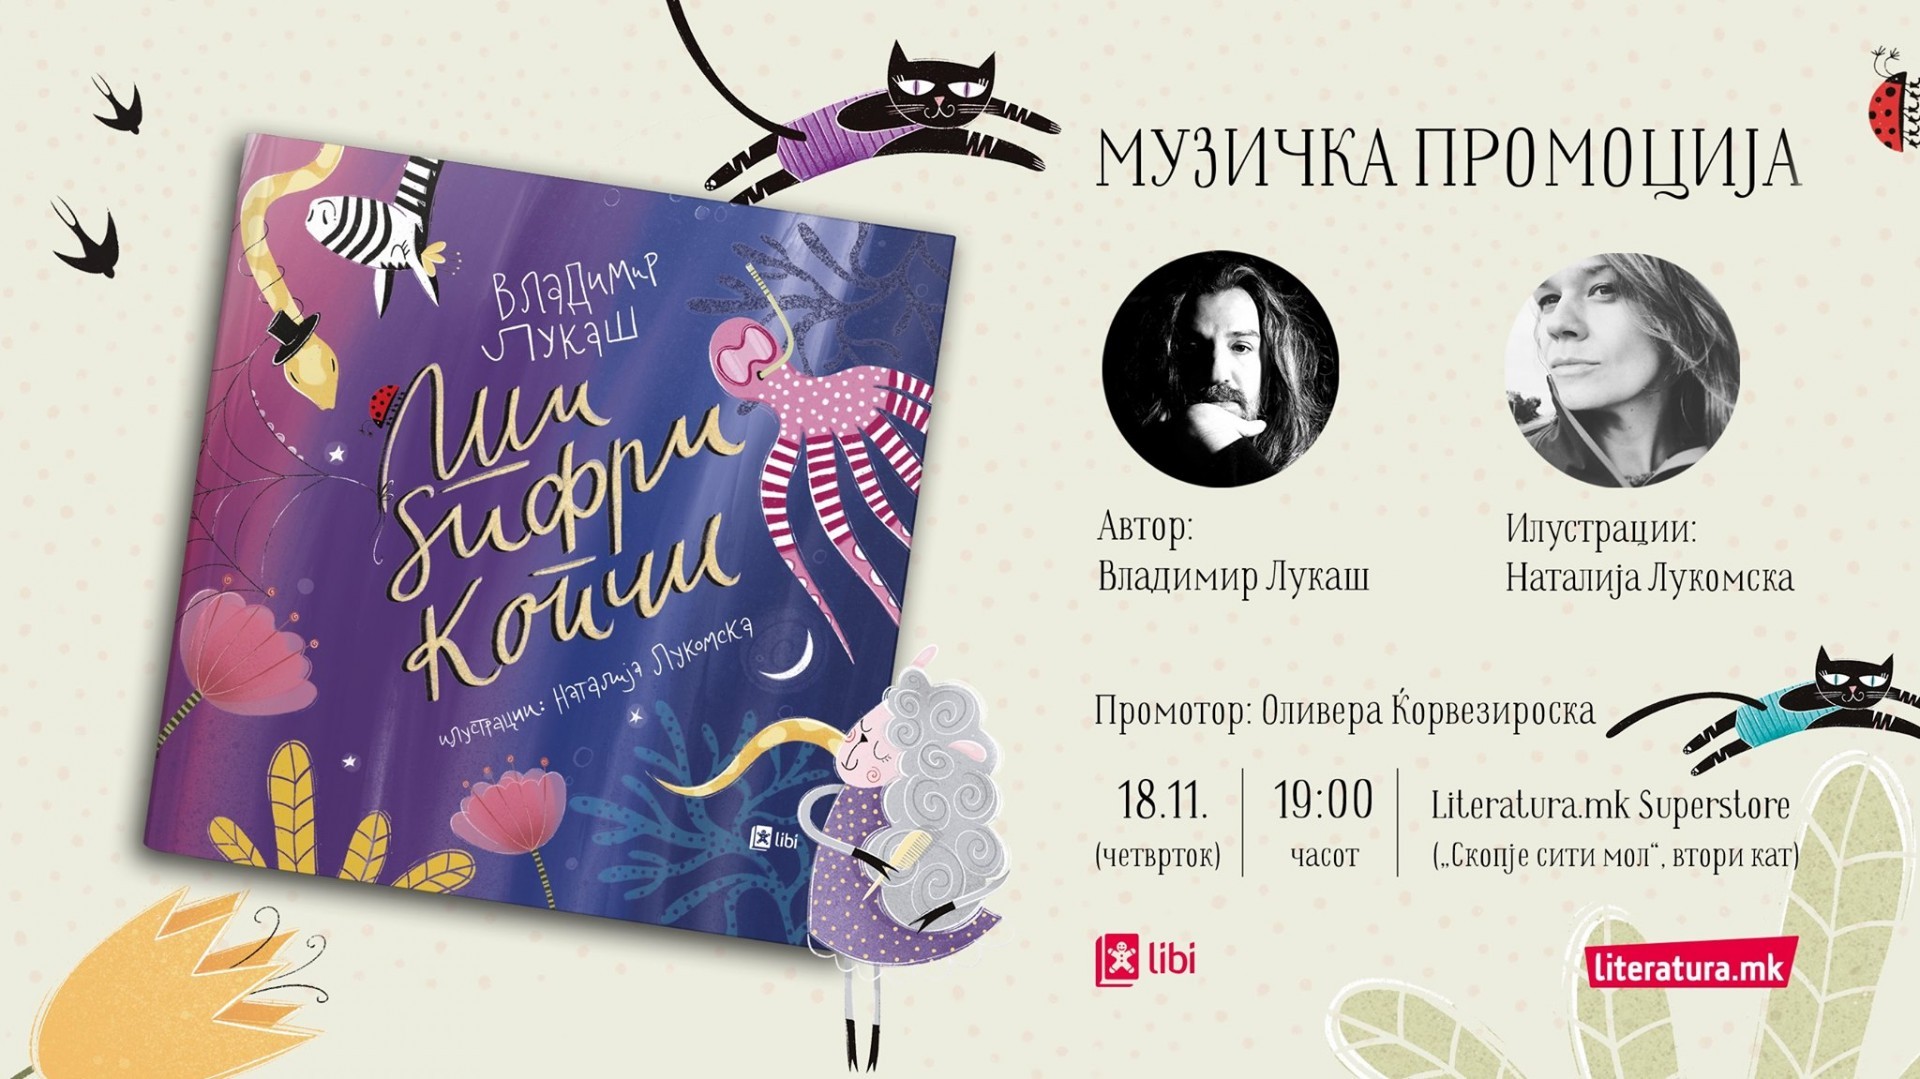 Владимир Лукаш со музичко „читање“ ќе ја промовира својата нова сликовница „Ши, ѕифри, копчи“